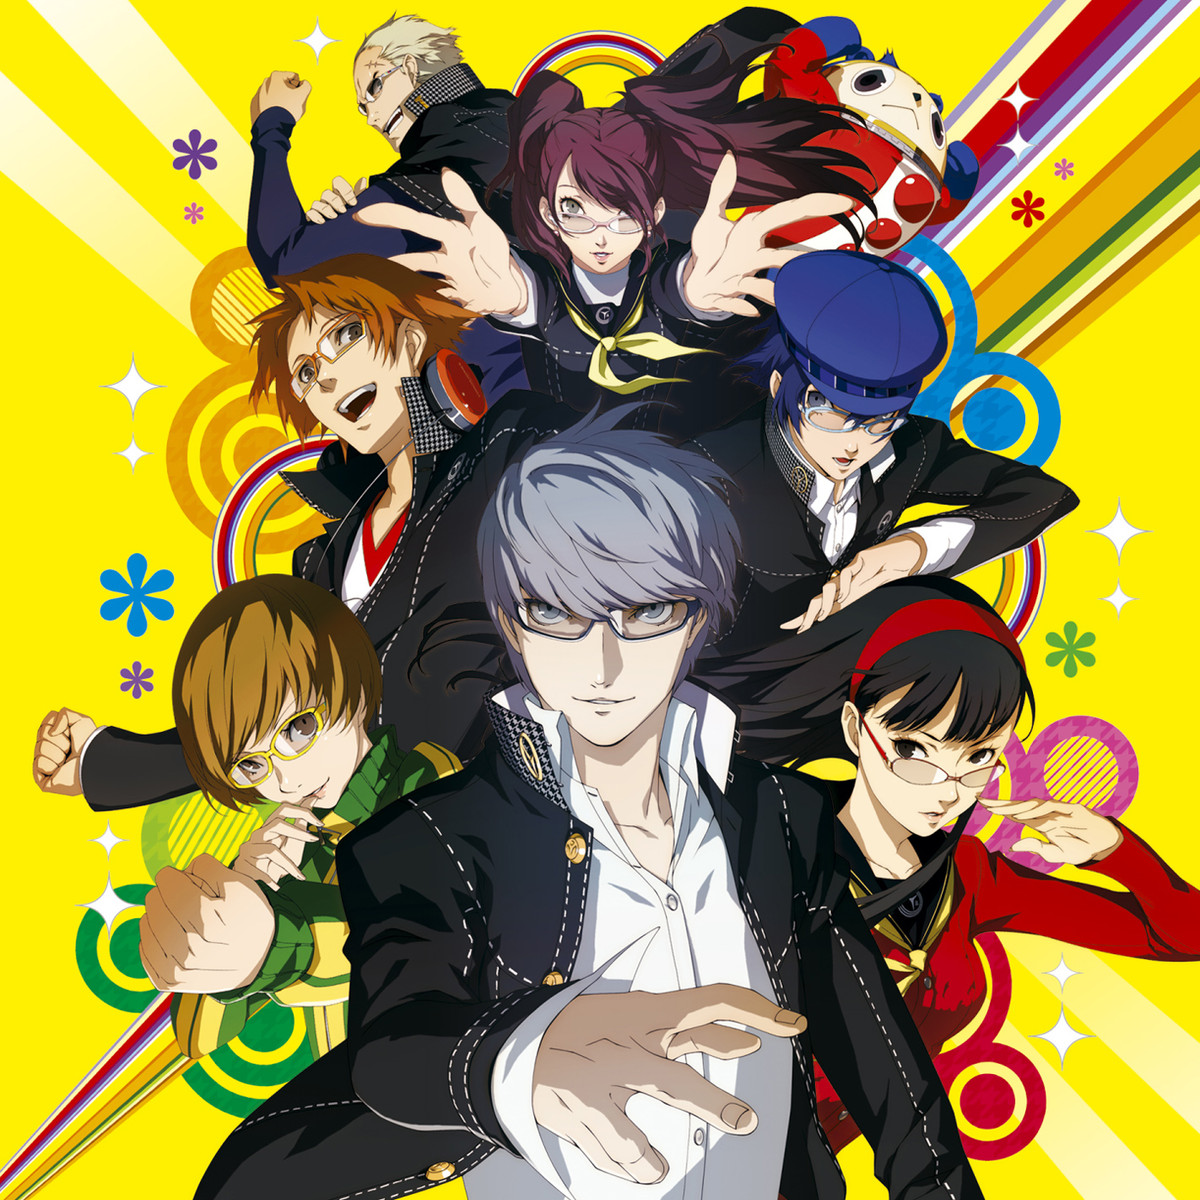 Persona 3 Portable en Persona 4 Golden nu beschikbaar!